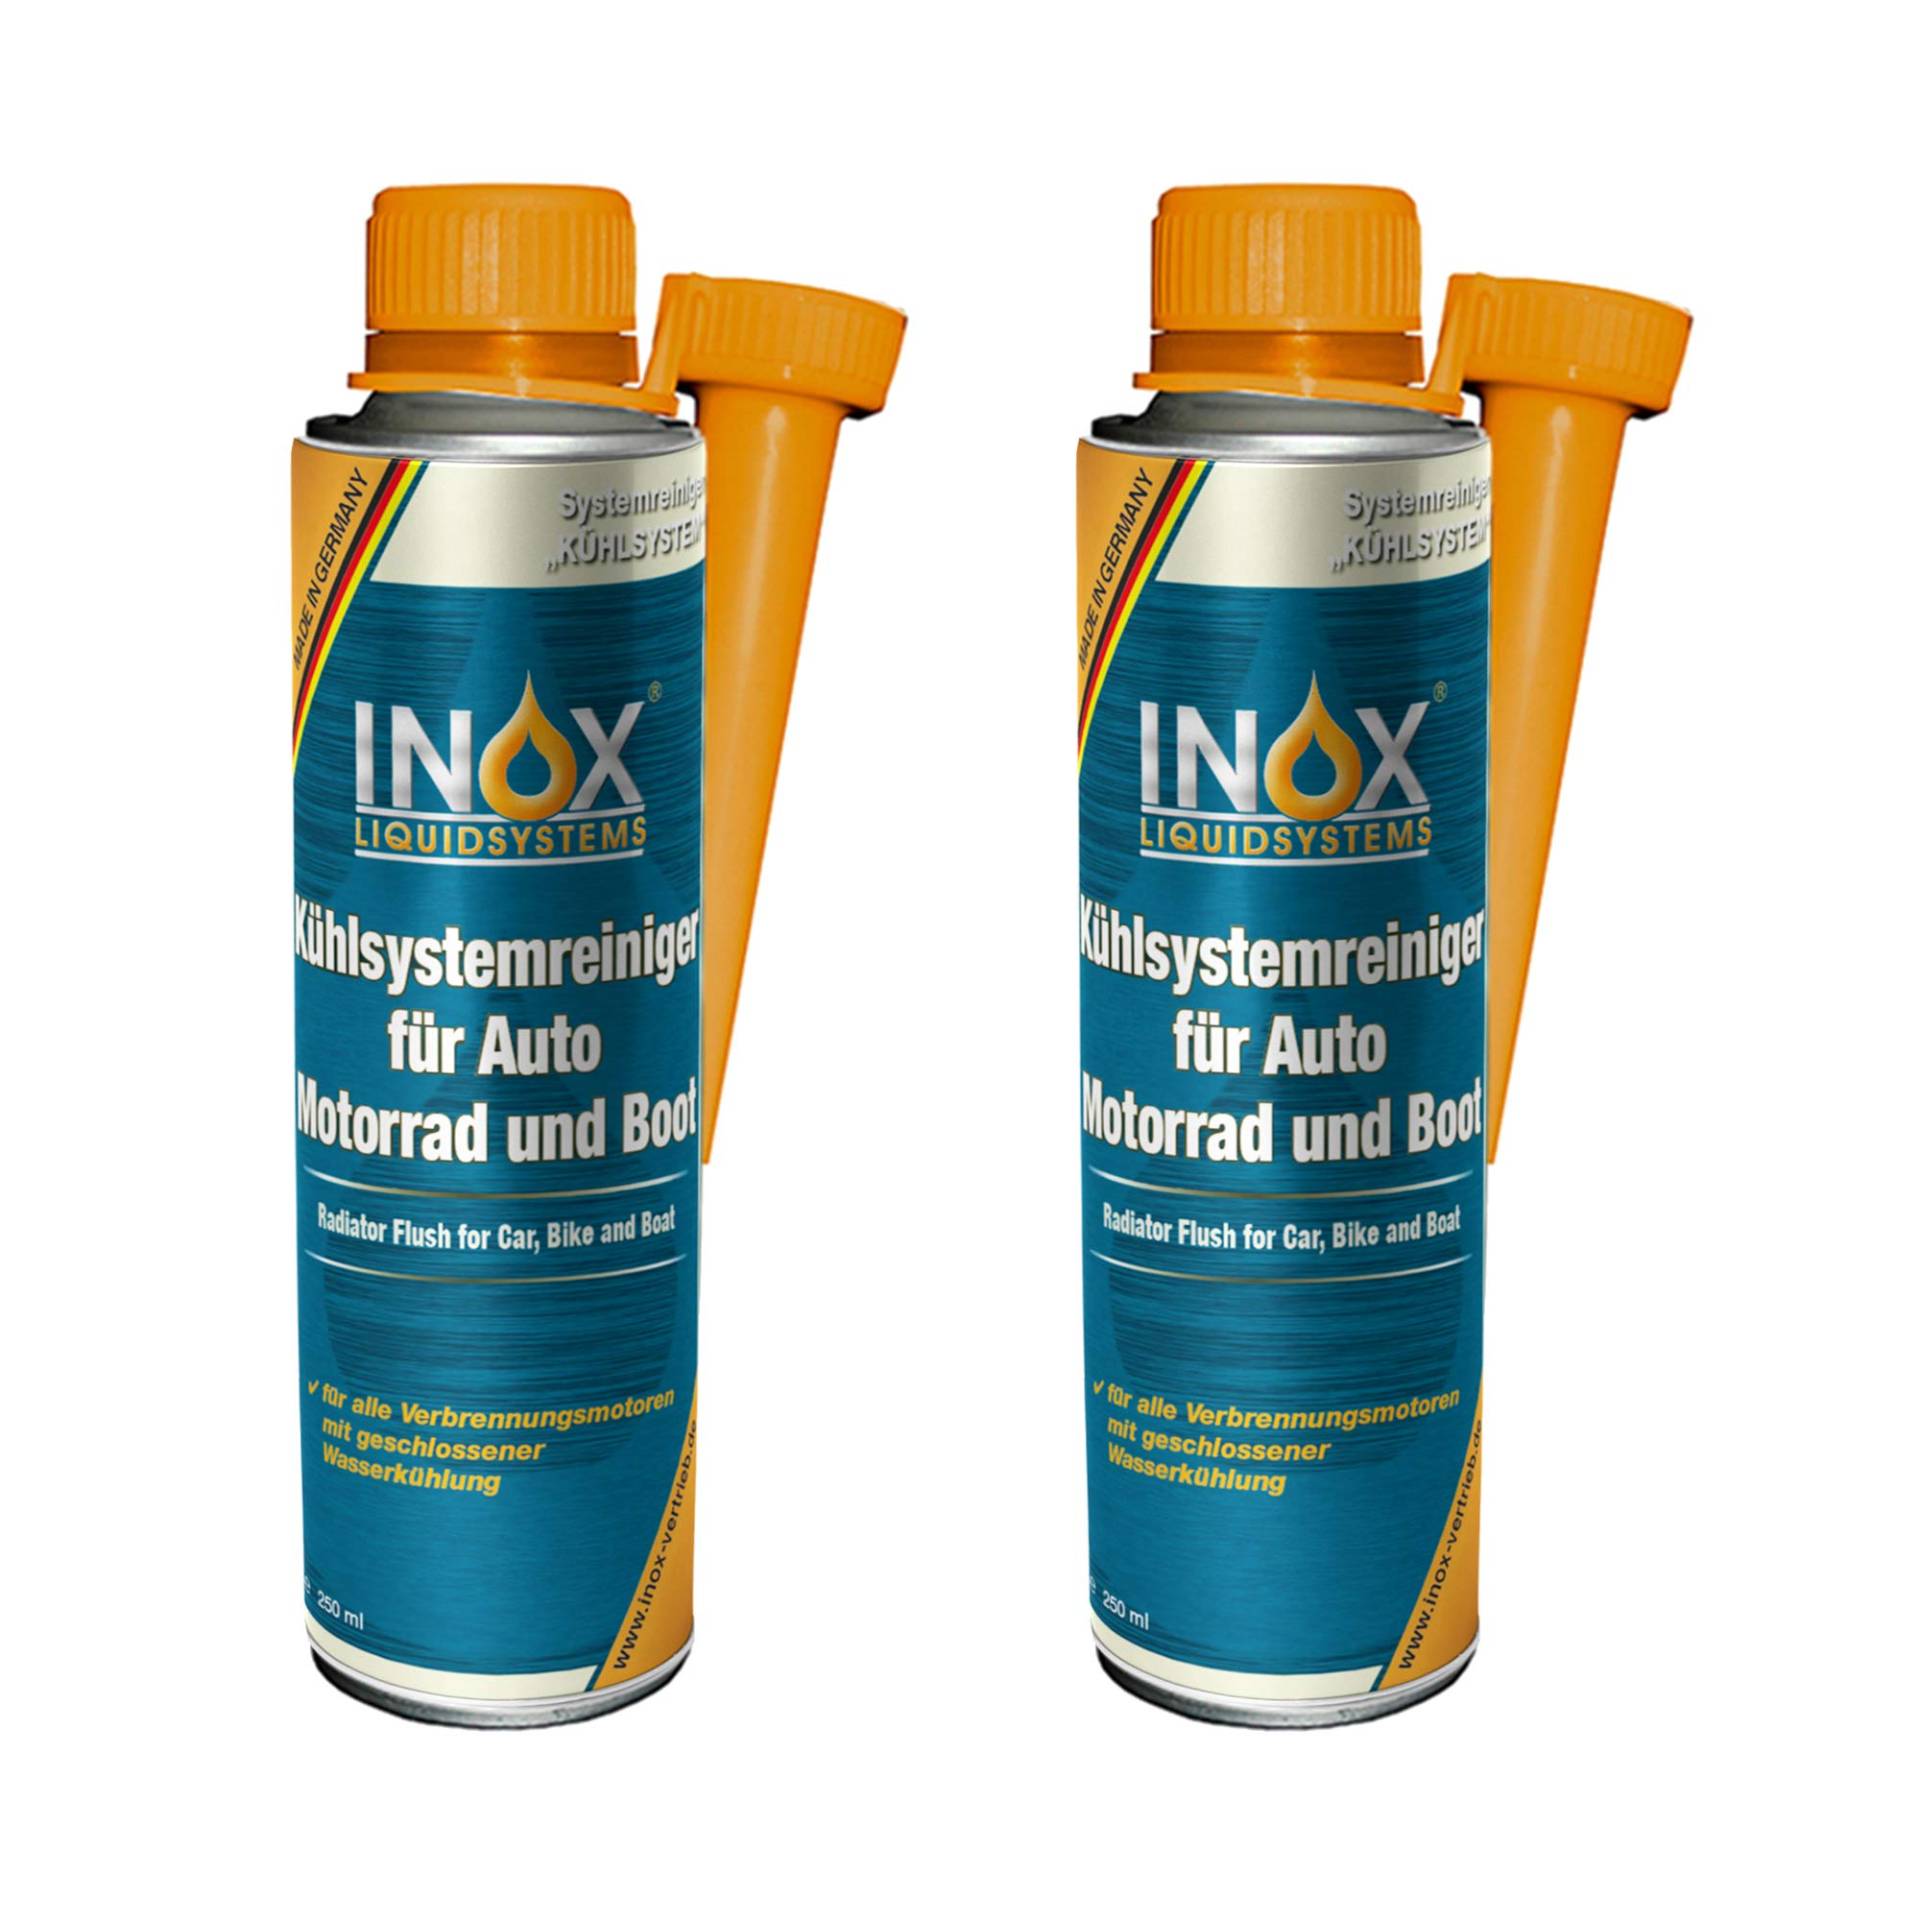 INOX® Kühlsystemreiniger Additiv, 2 x 250 ml - Kühlerschutz für Auto, Motor und Boot von INOX-LIQUIDSYSTEMS